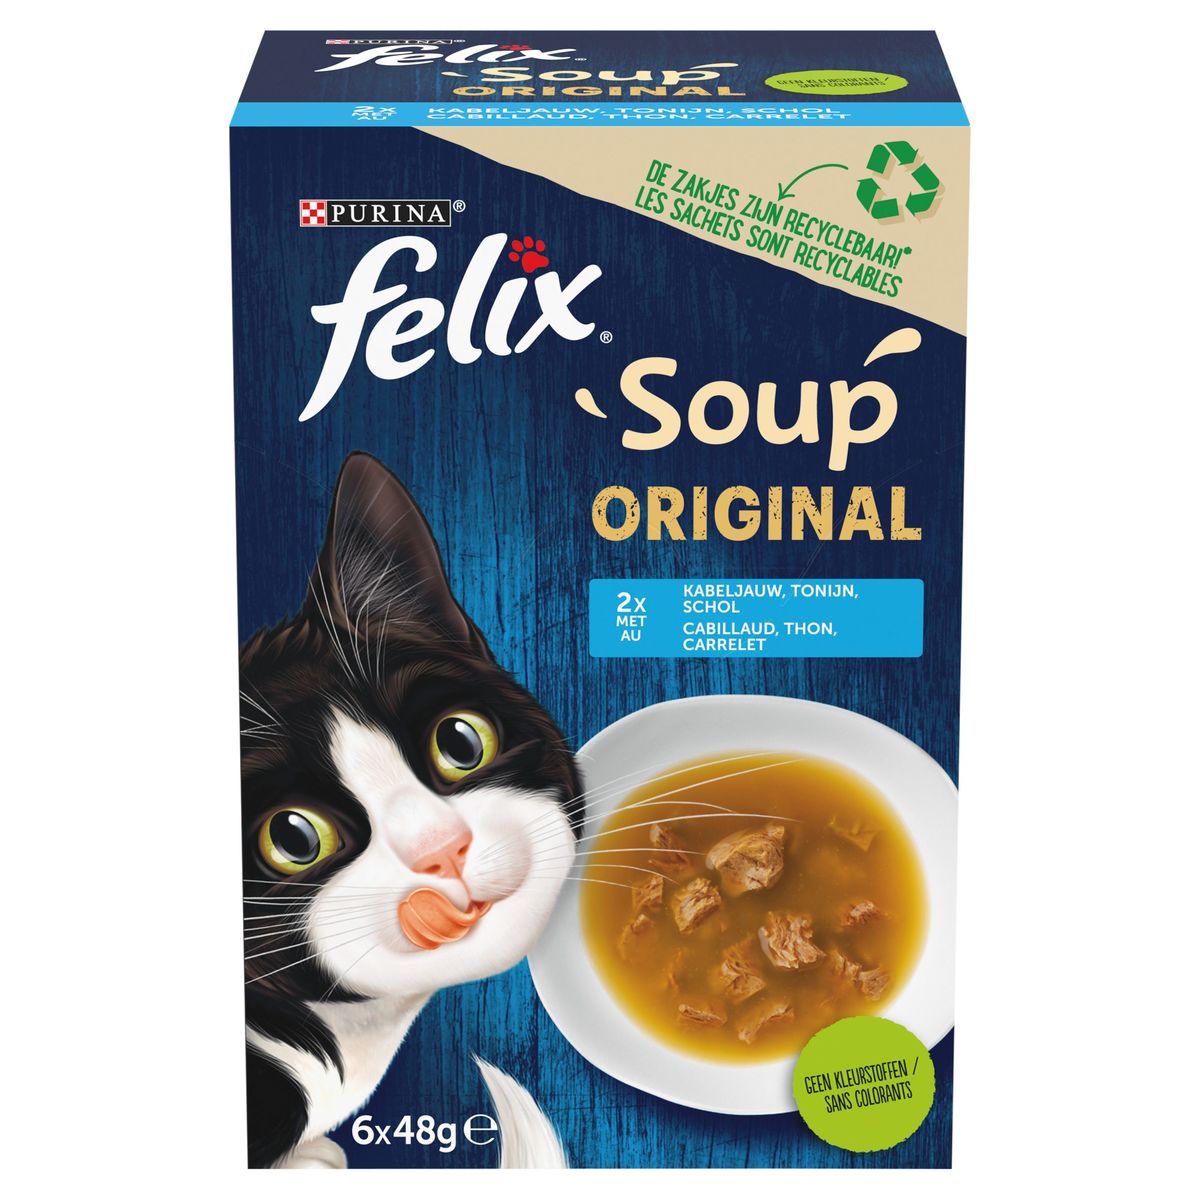 Promo Soupe pour chat felix chez Carrefour